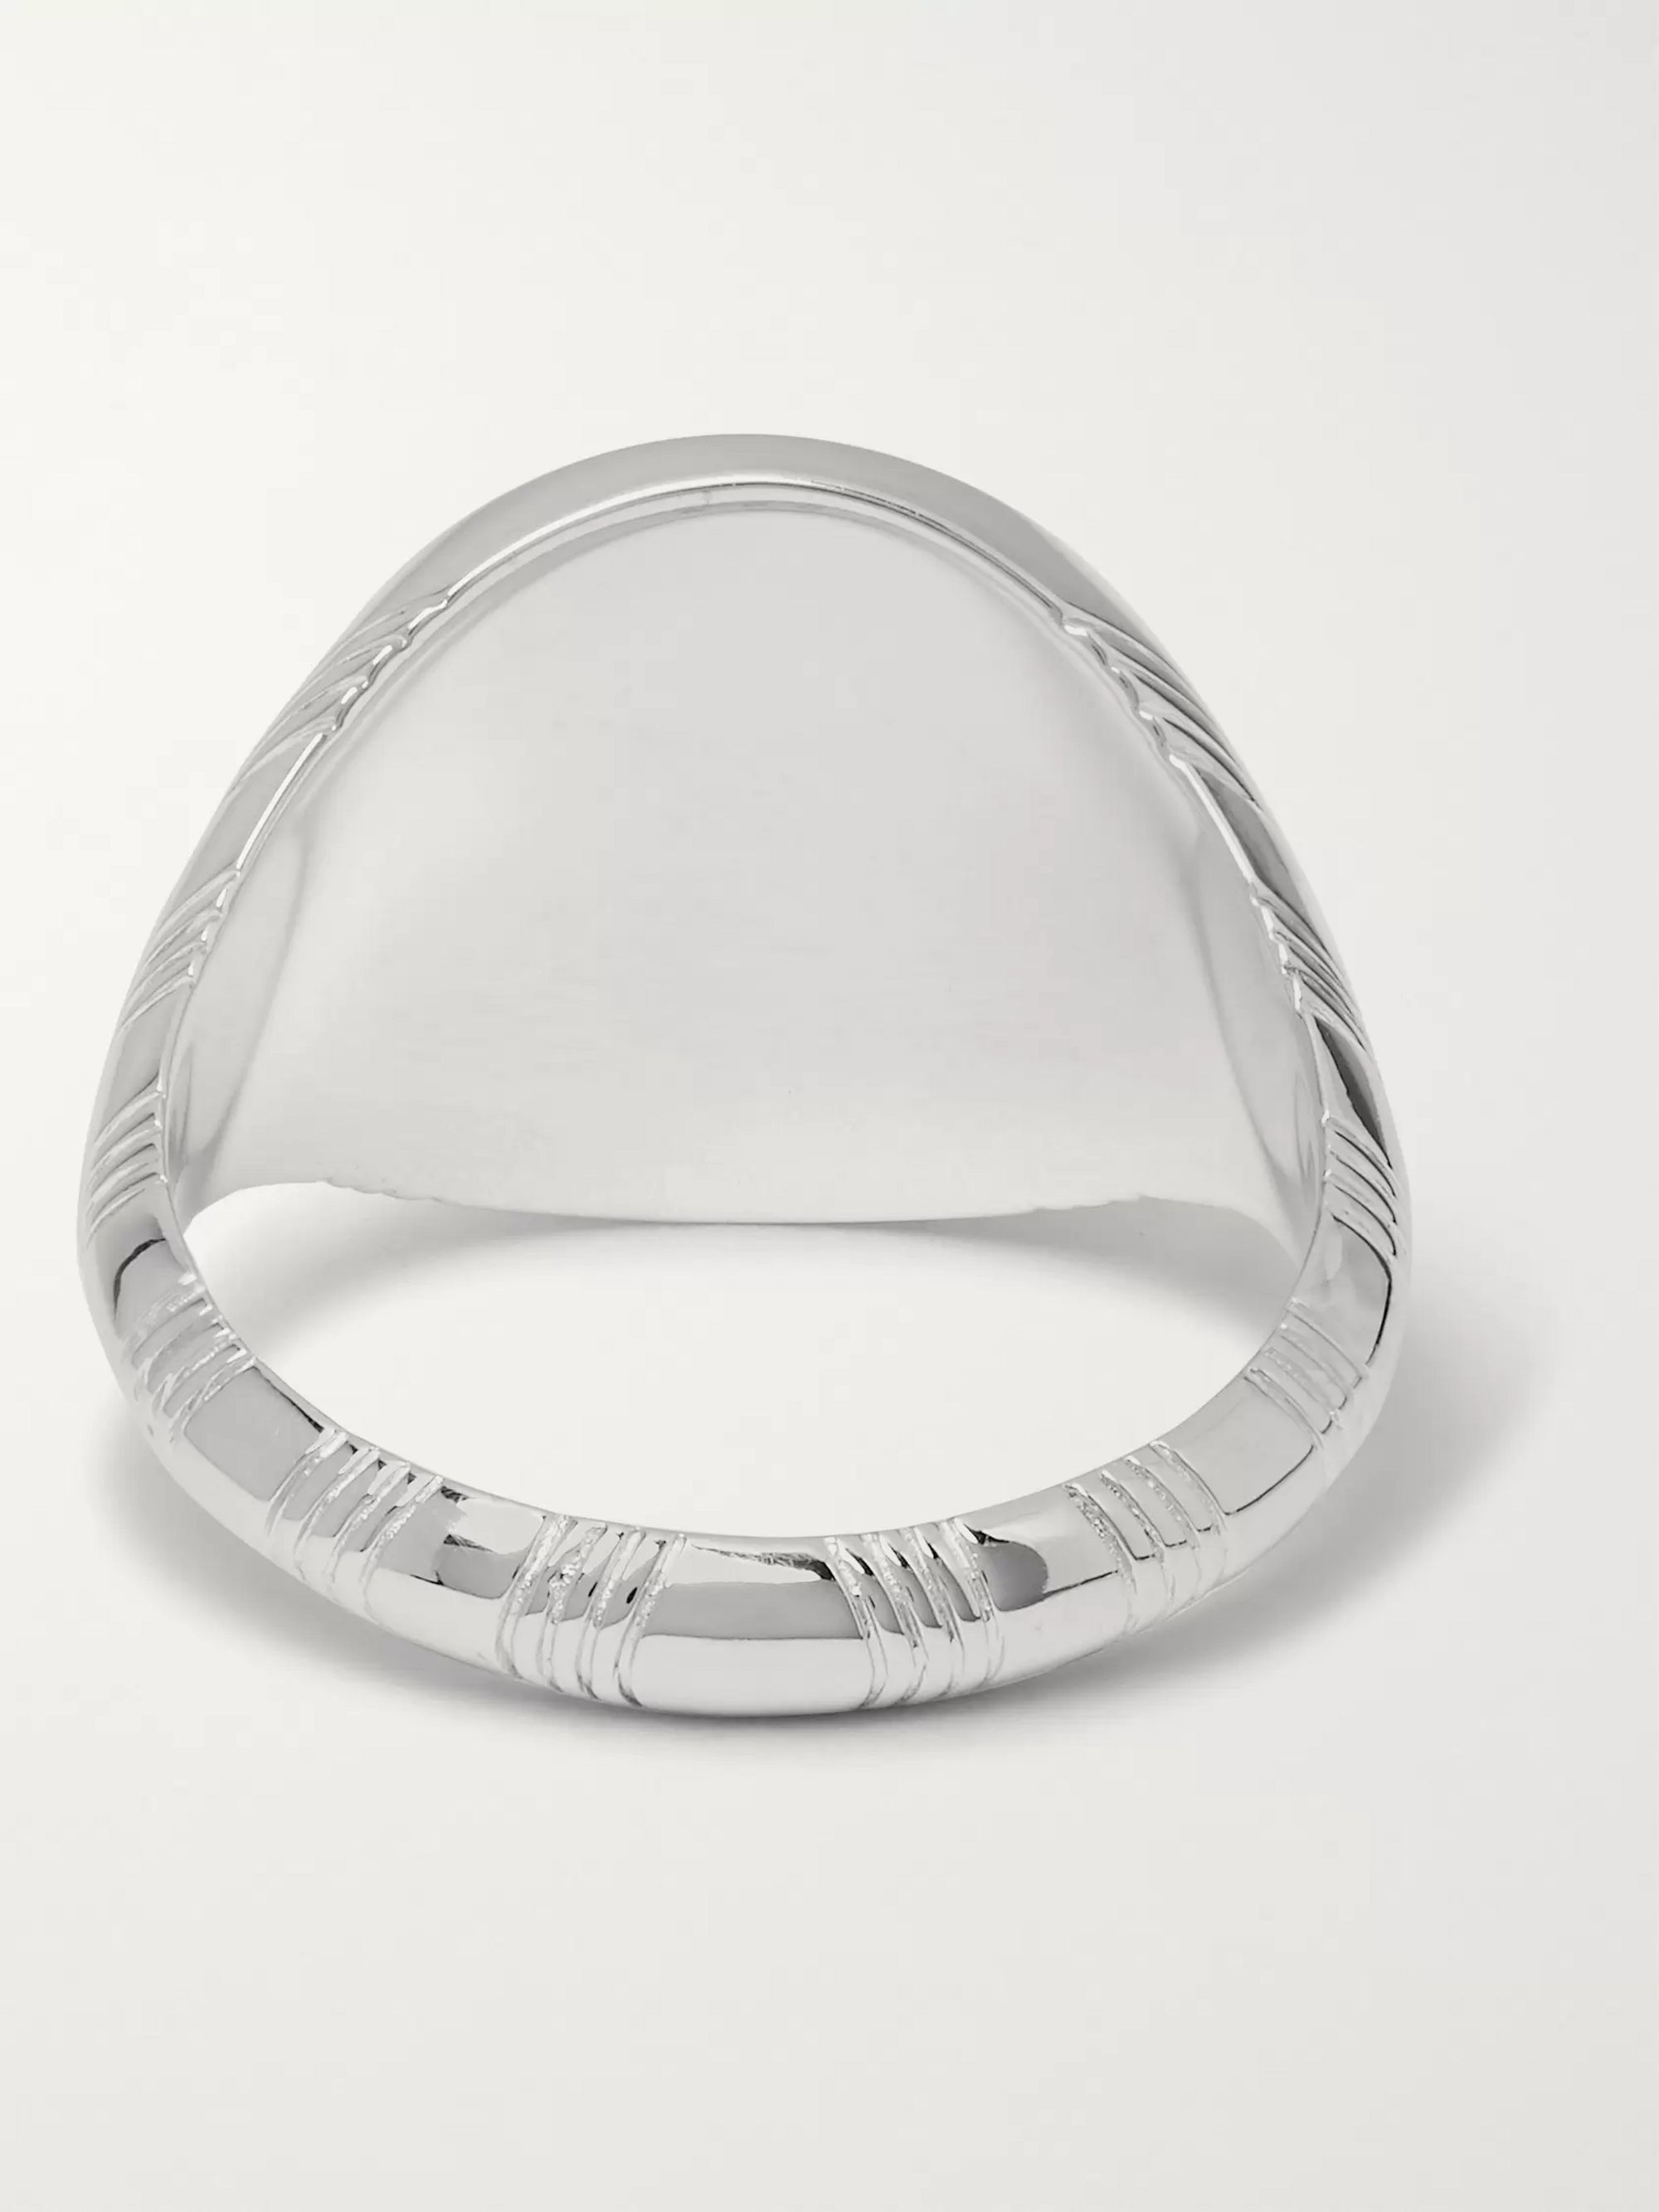 Silver SilverTone Ring A.P.C. MR PORTER